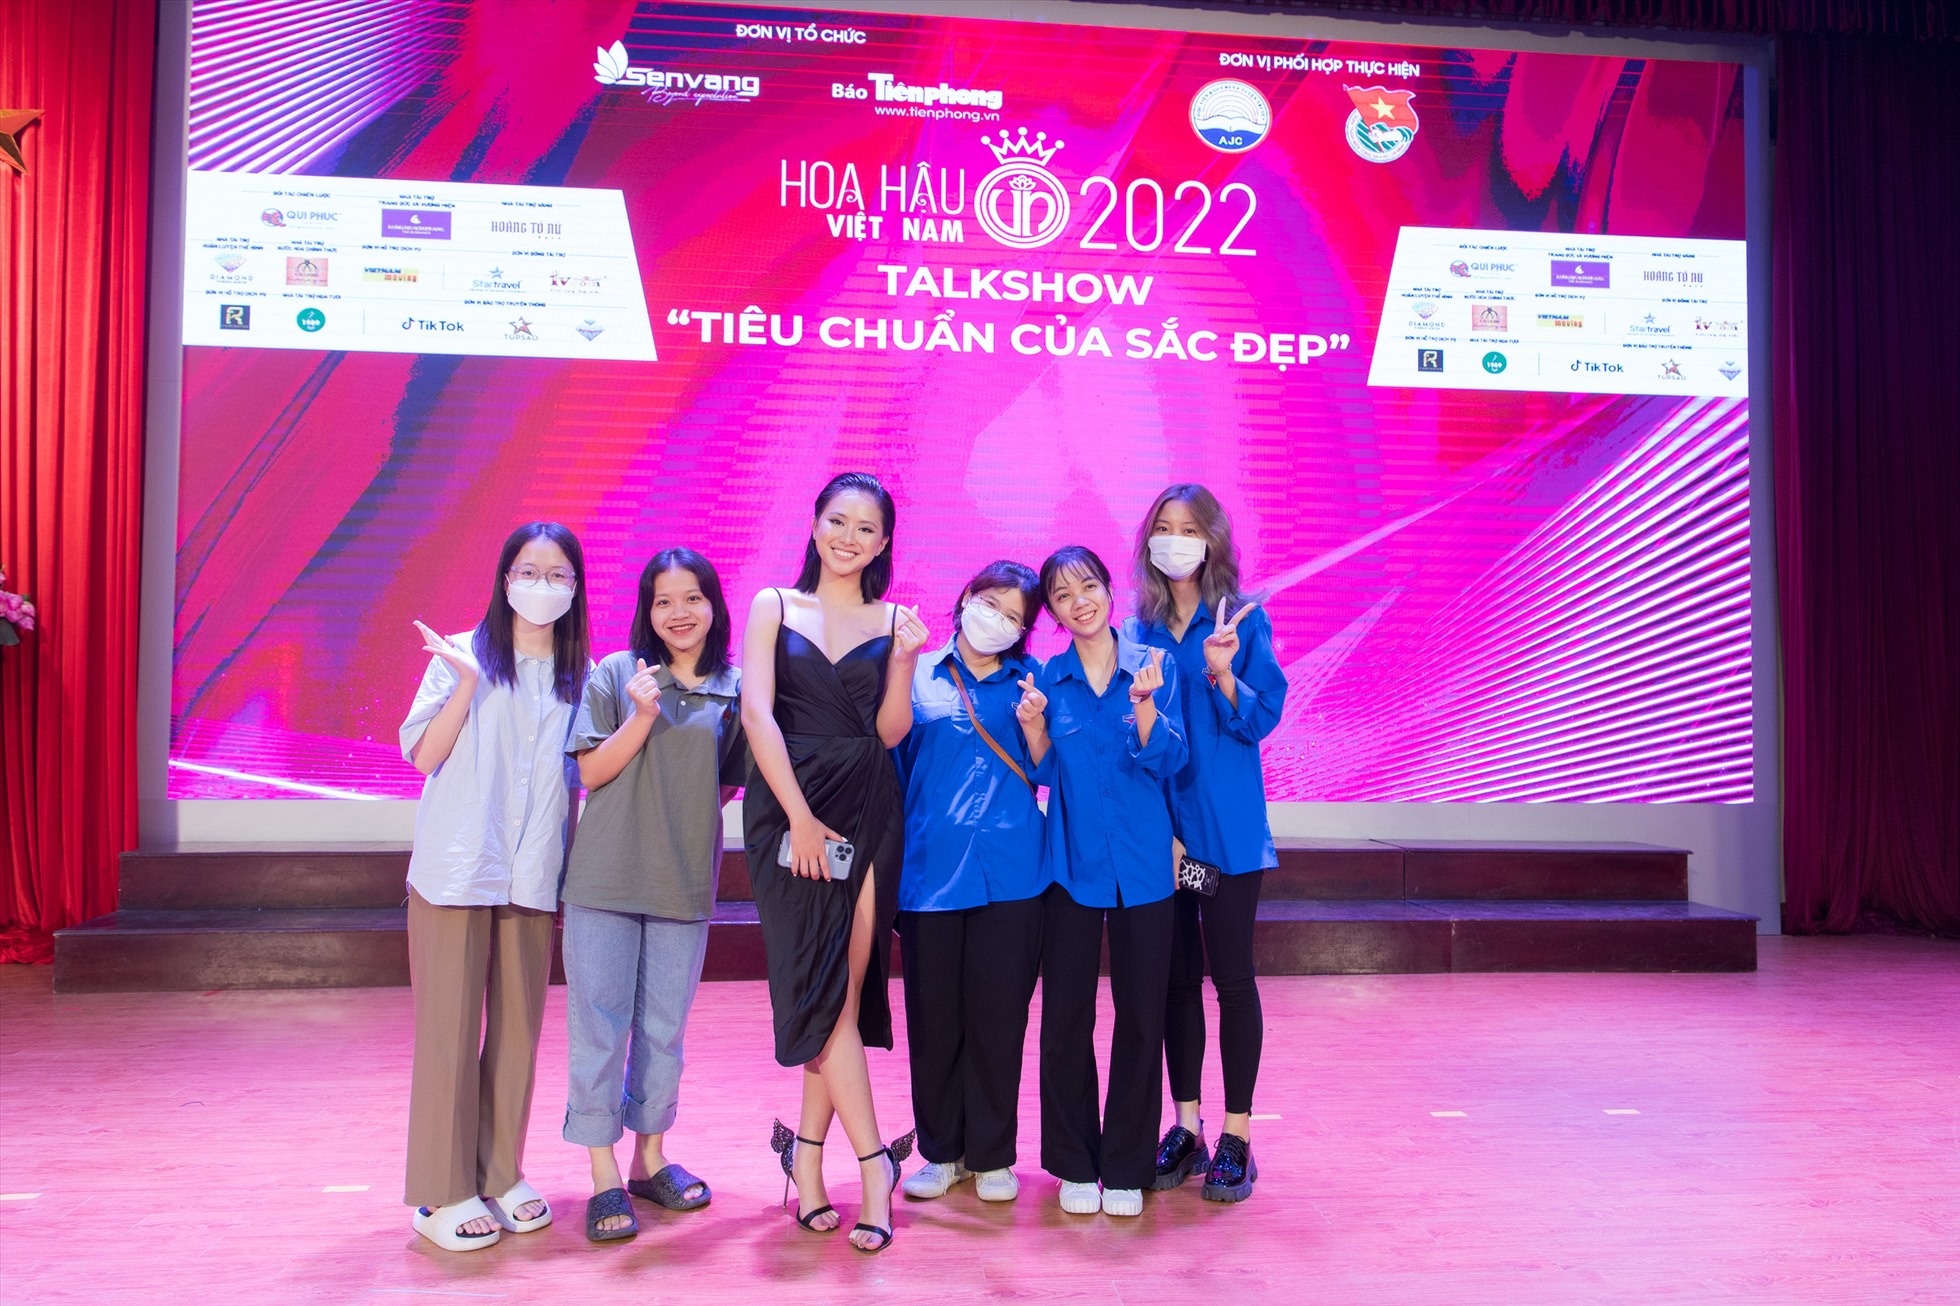 Hoa hậu Đỗ Hà và “Người đẹp thể thao” Phù Bảo Nghi tại tour tuyển sinh “Hoa hậu Việt Nam 2022. Ảnh: BTC.